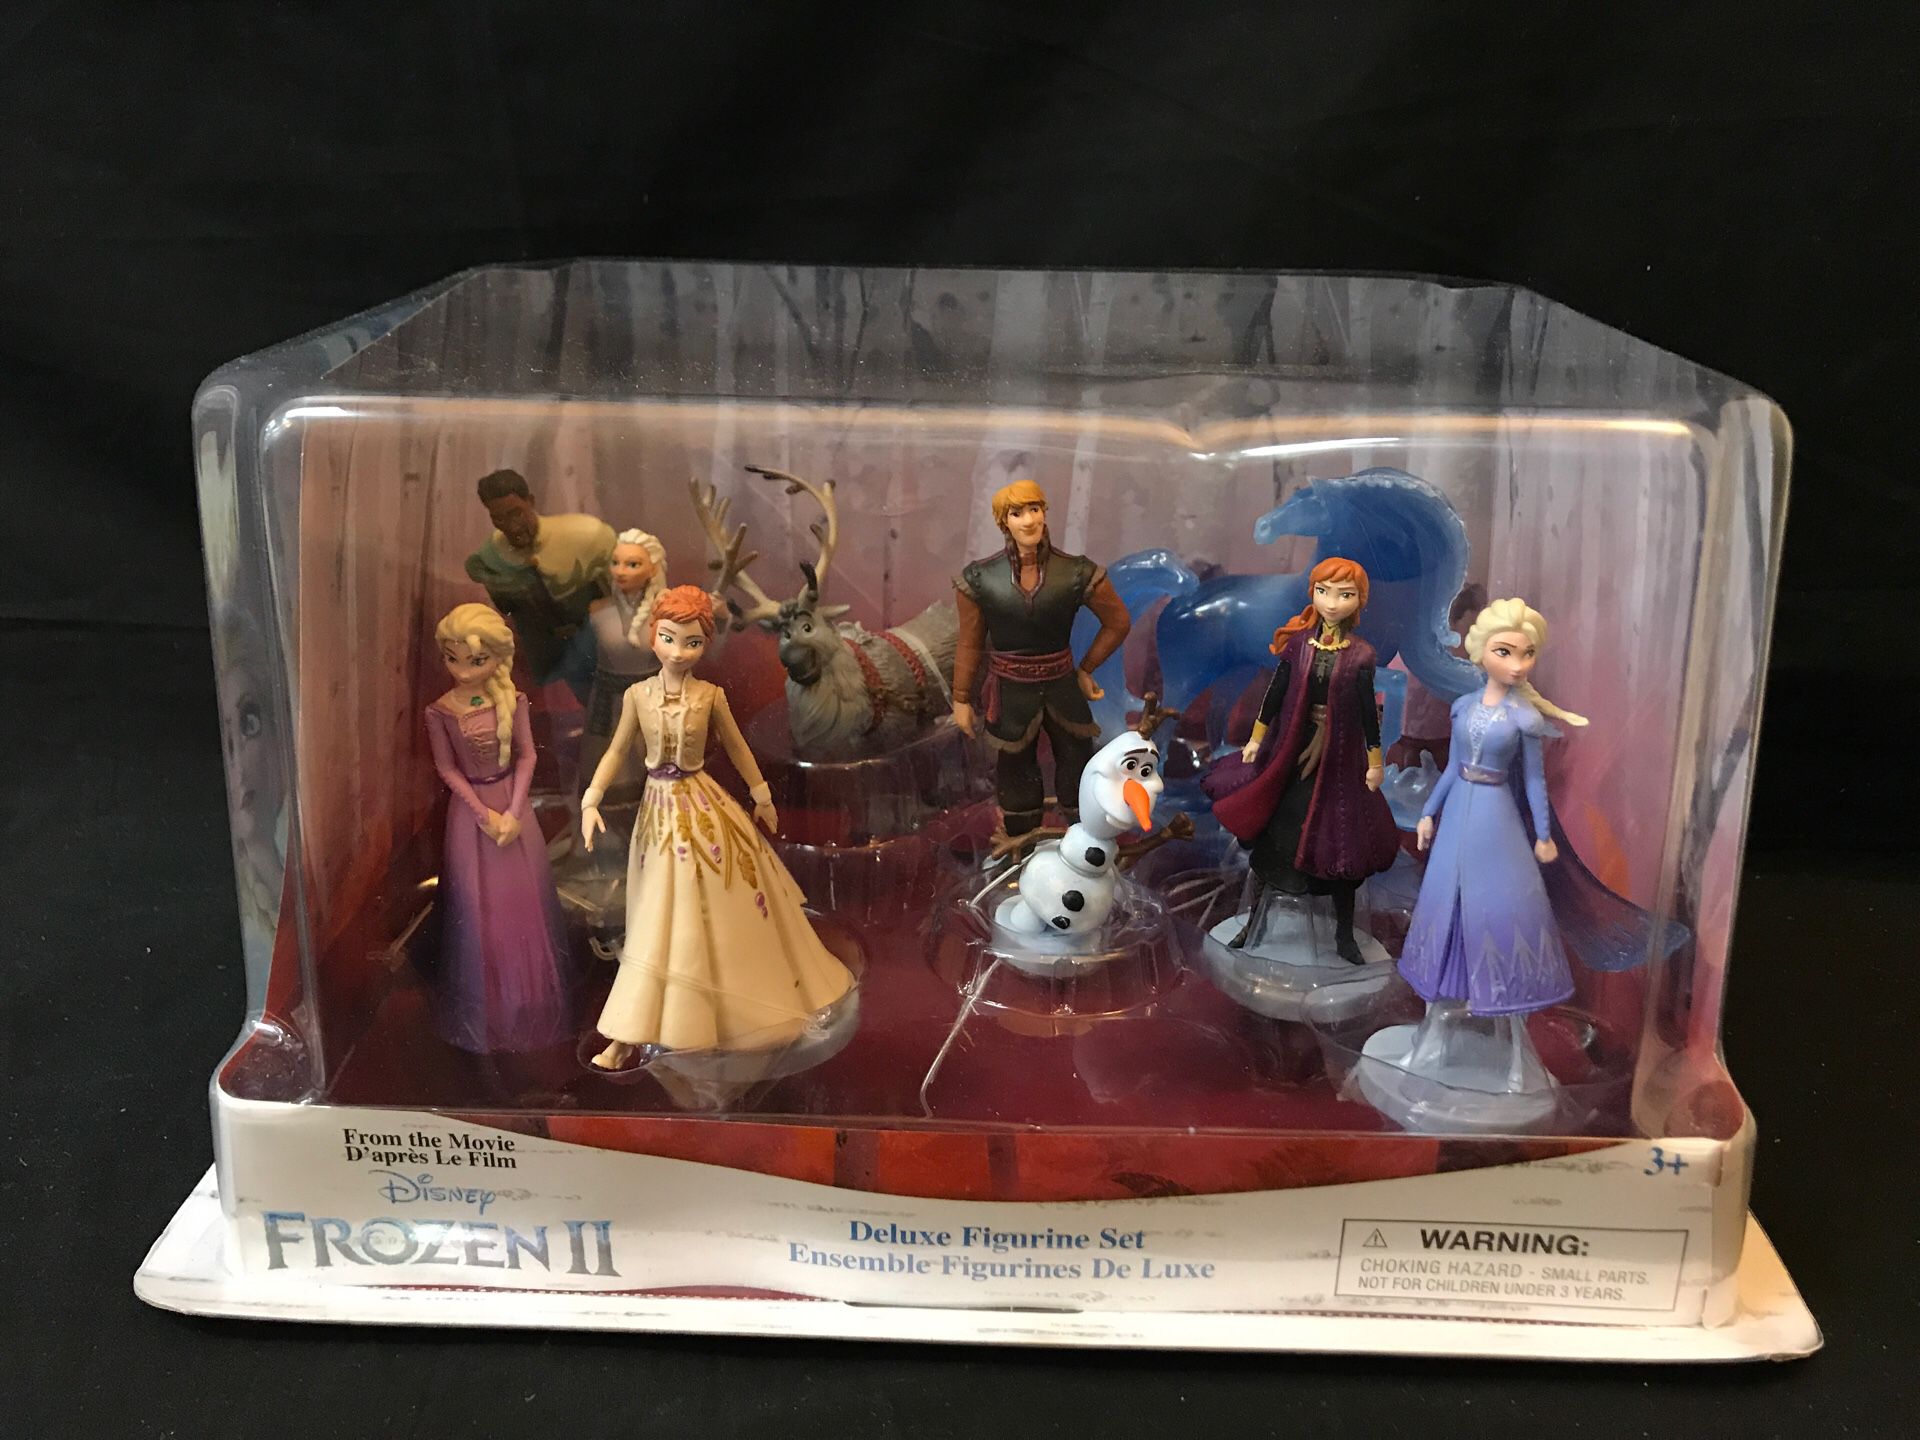 Disney Collection Frozen 2 Deluxe Figurine Set.